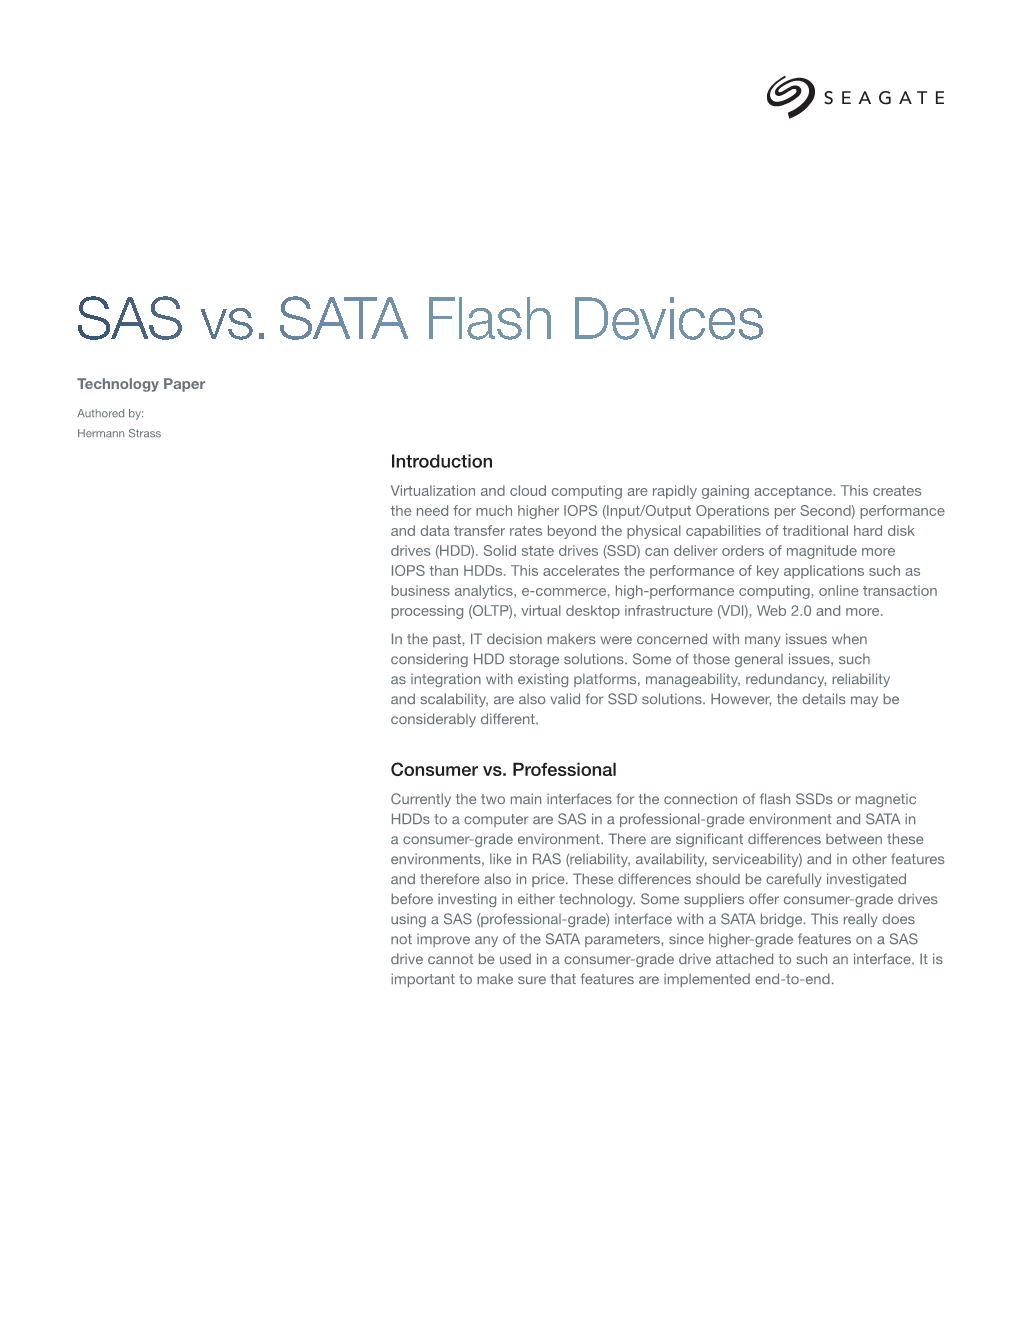 SAS Vs. SATA Flash Devices